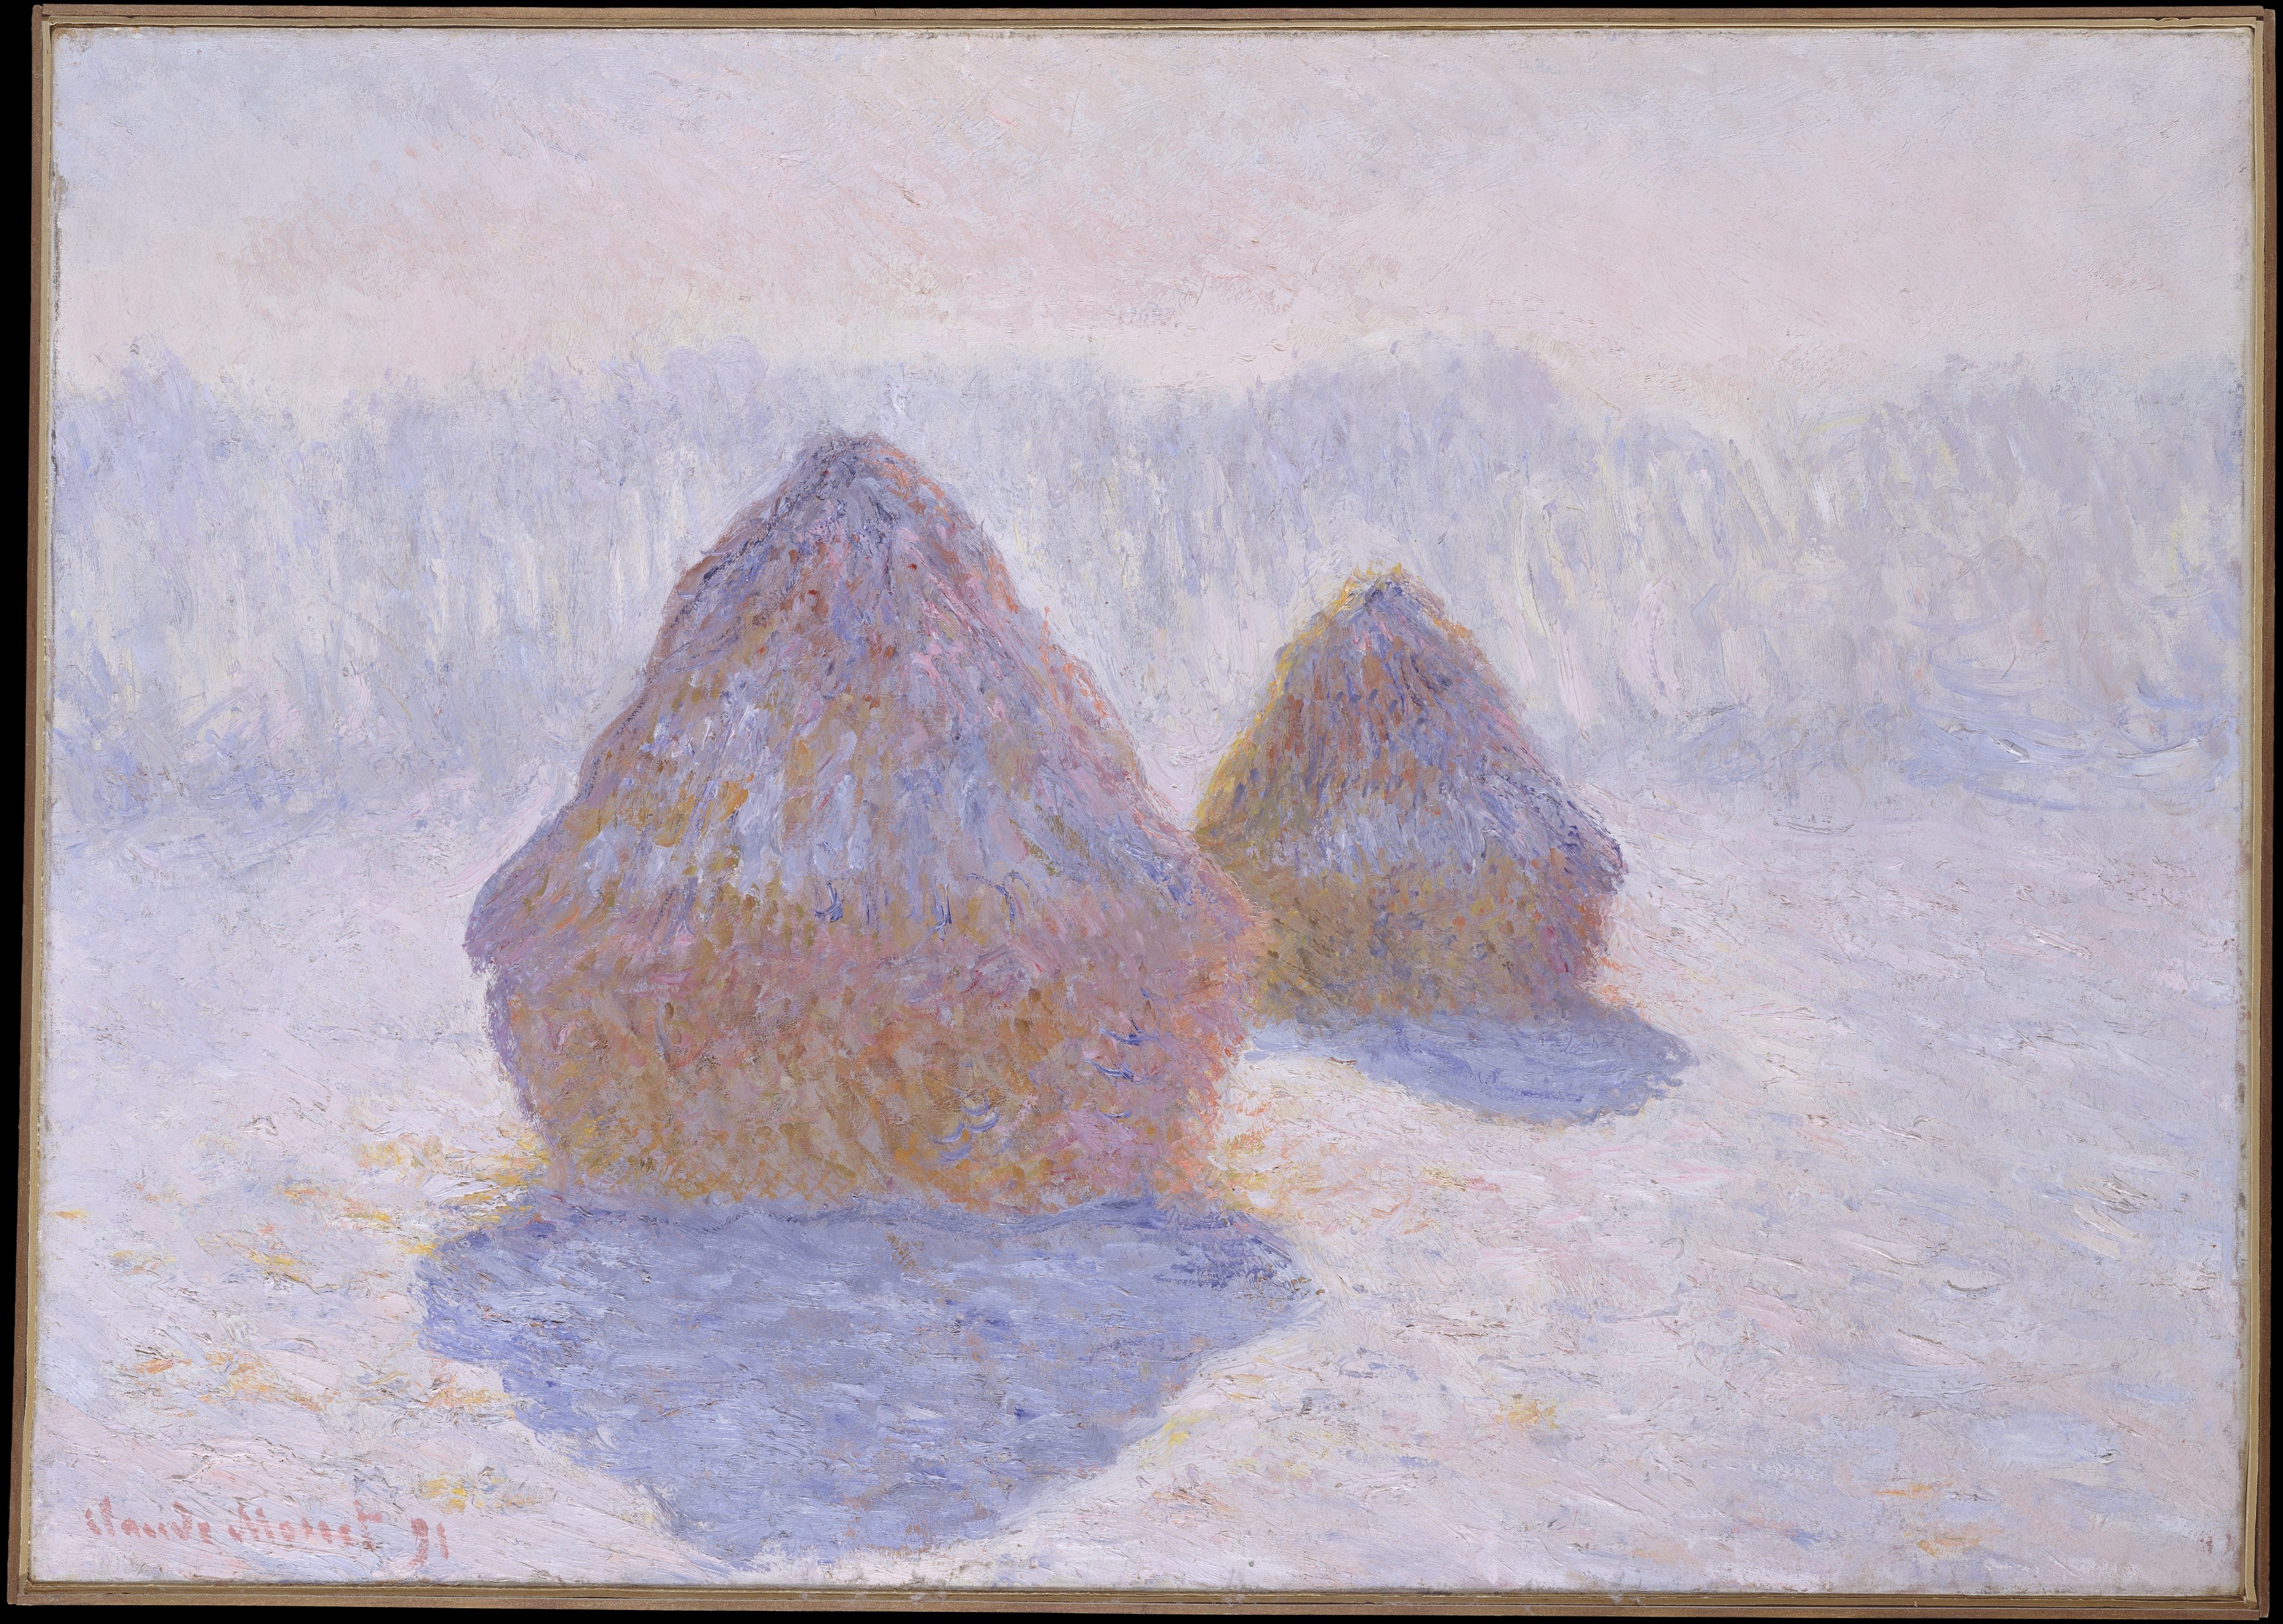 Getreideschober (Auswirkungen von Schnee und Sonne) by Claude Monet - 1891 - 65.4 x 92.1 cm Metropolitan Museum of Art